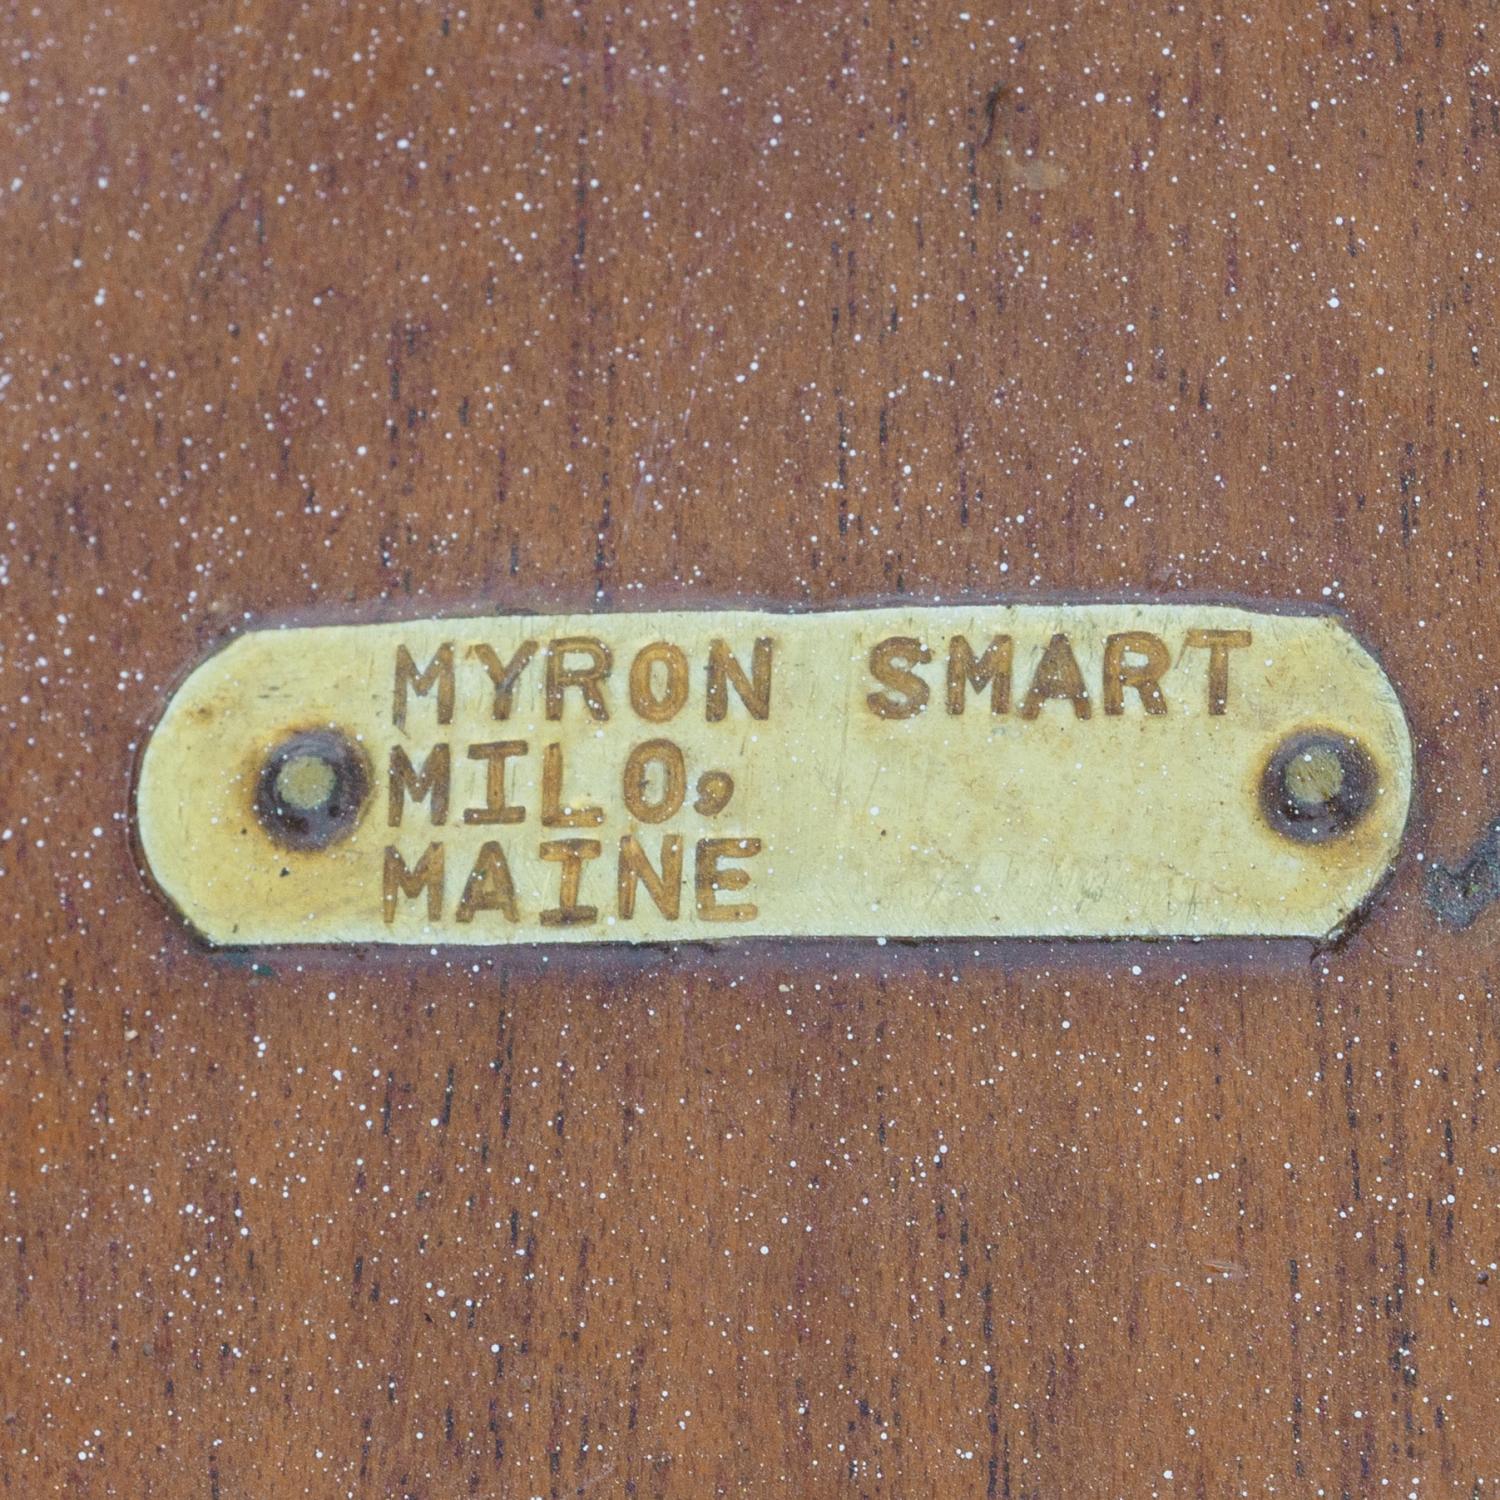 Myron Smart tag